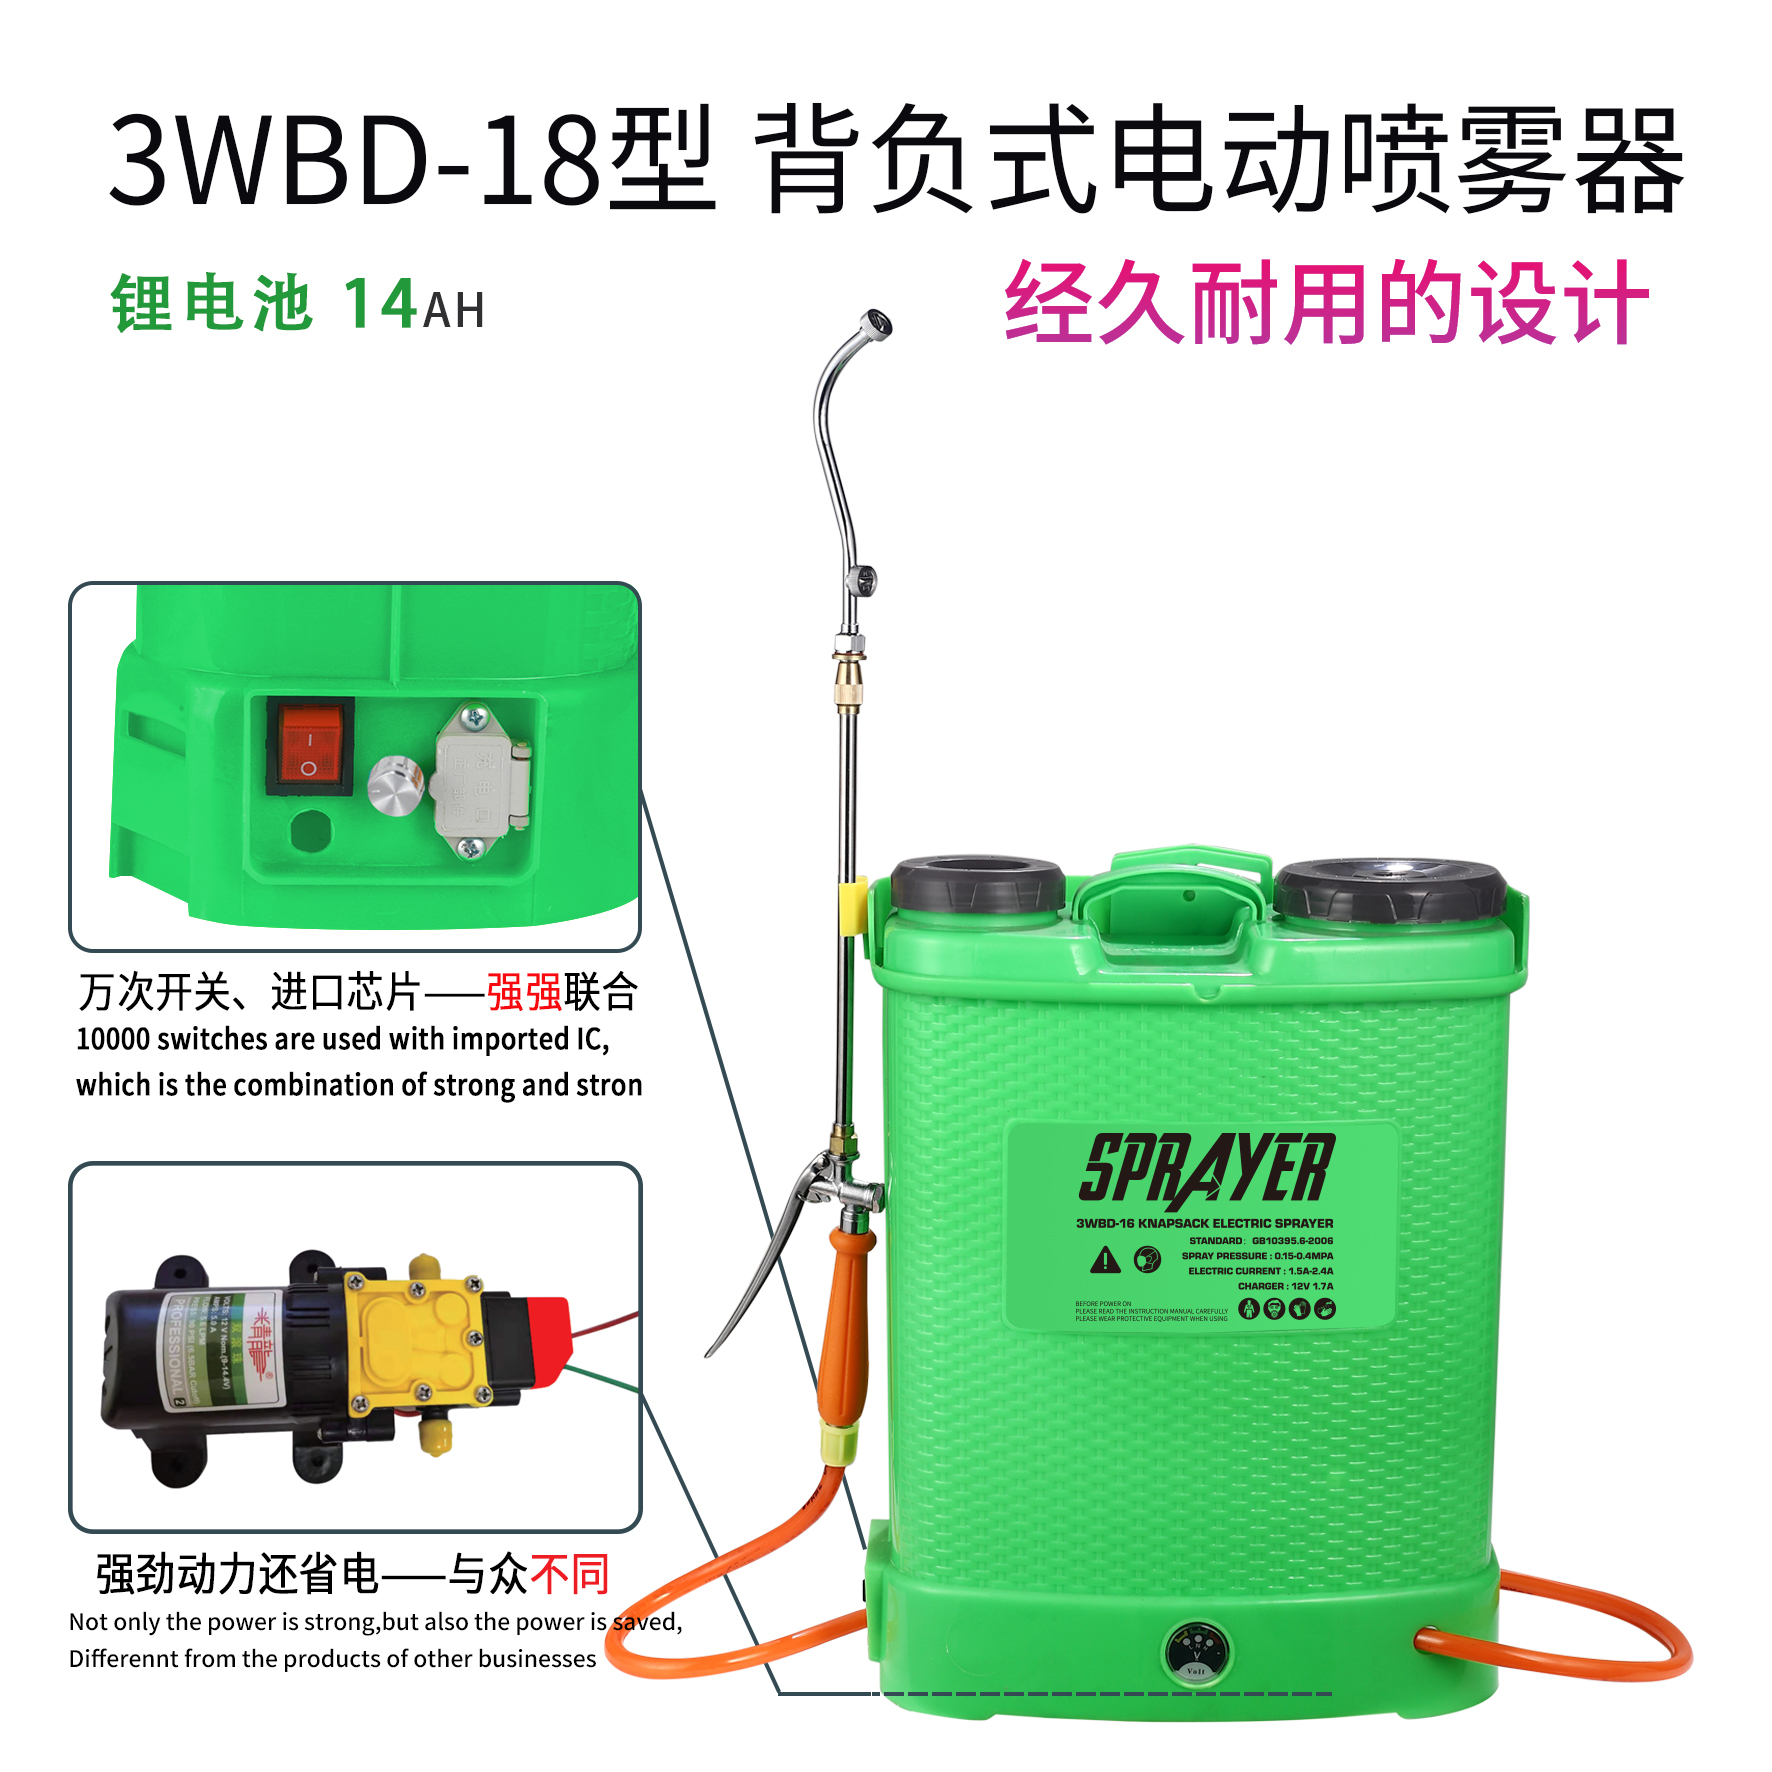 精龙电动喷雾器 旋钮调速 3WBD-18型 背负式 电动喷雾器 锂电池14AH